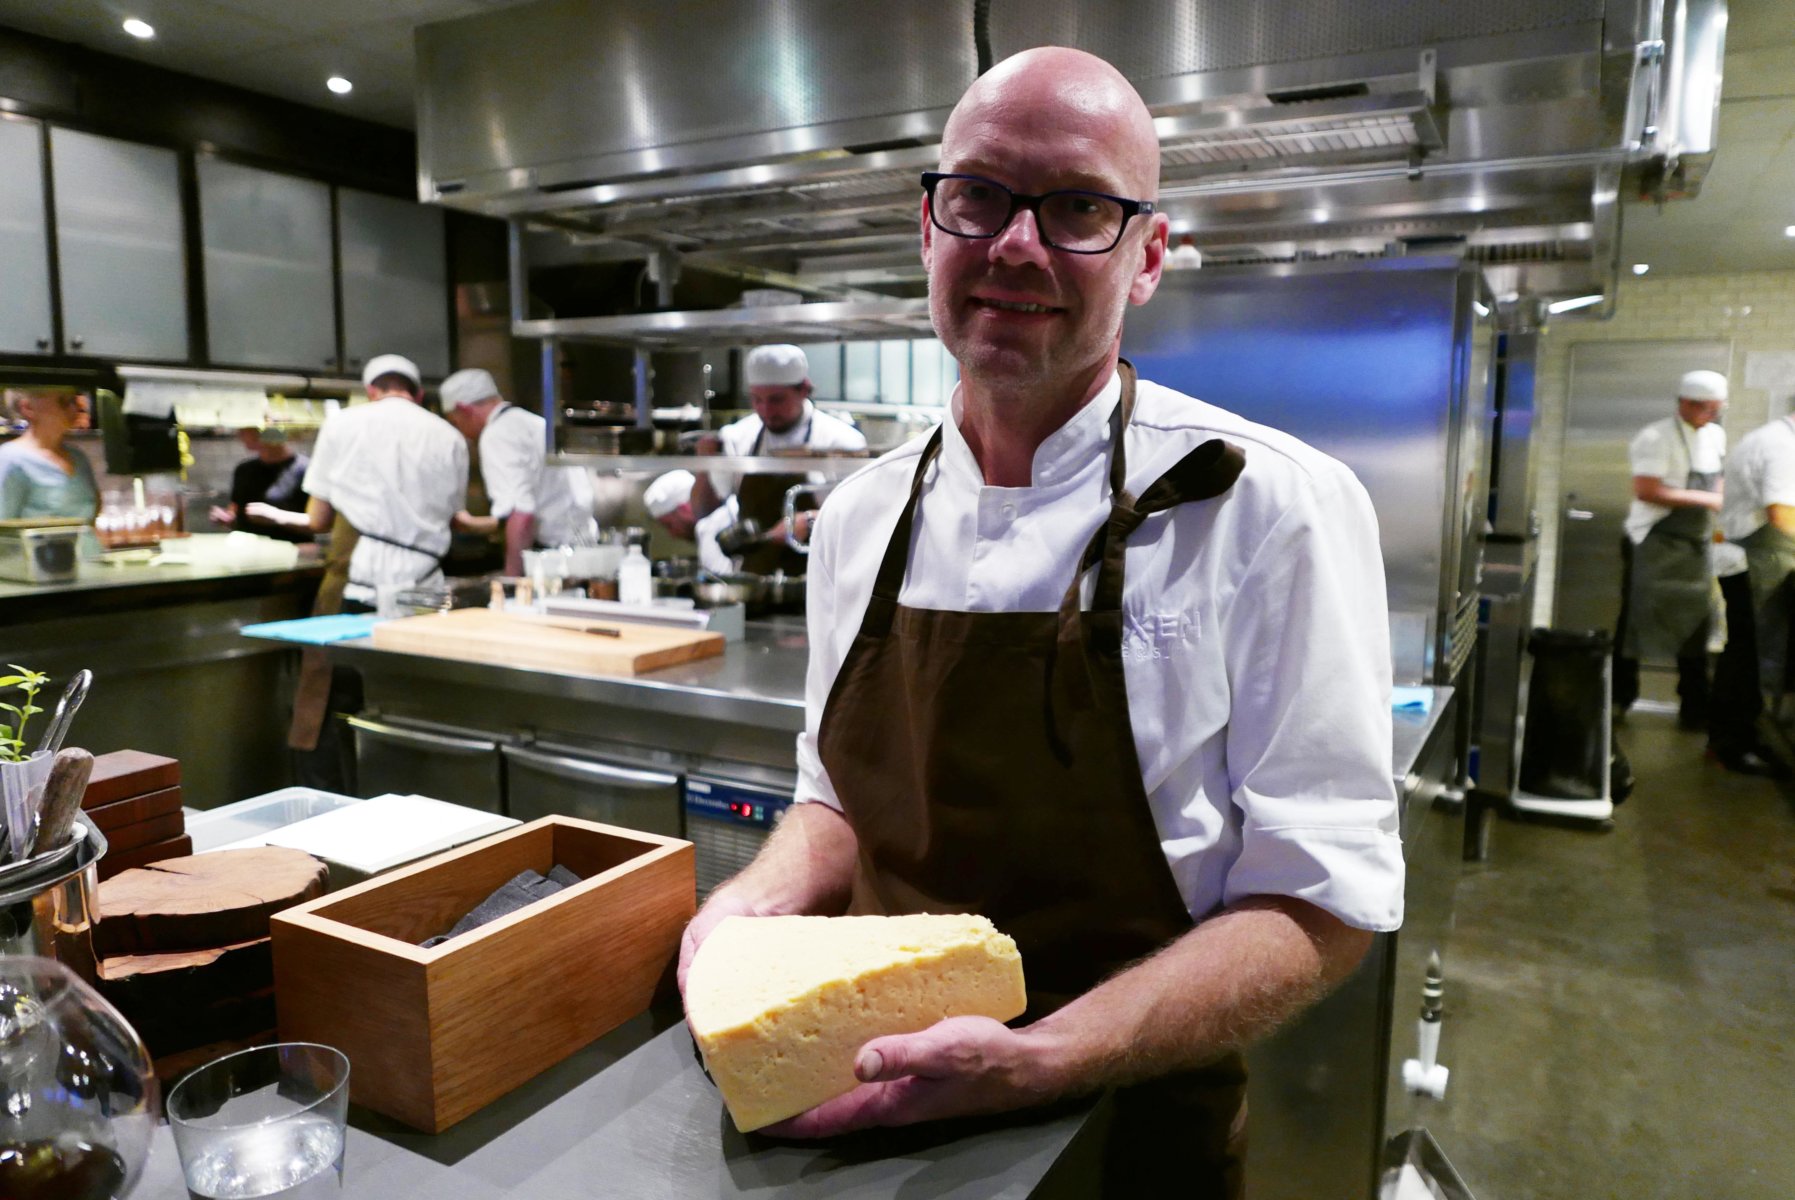 Chef Magnus Ek holding my favourite cheese - Västerbotten